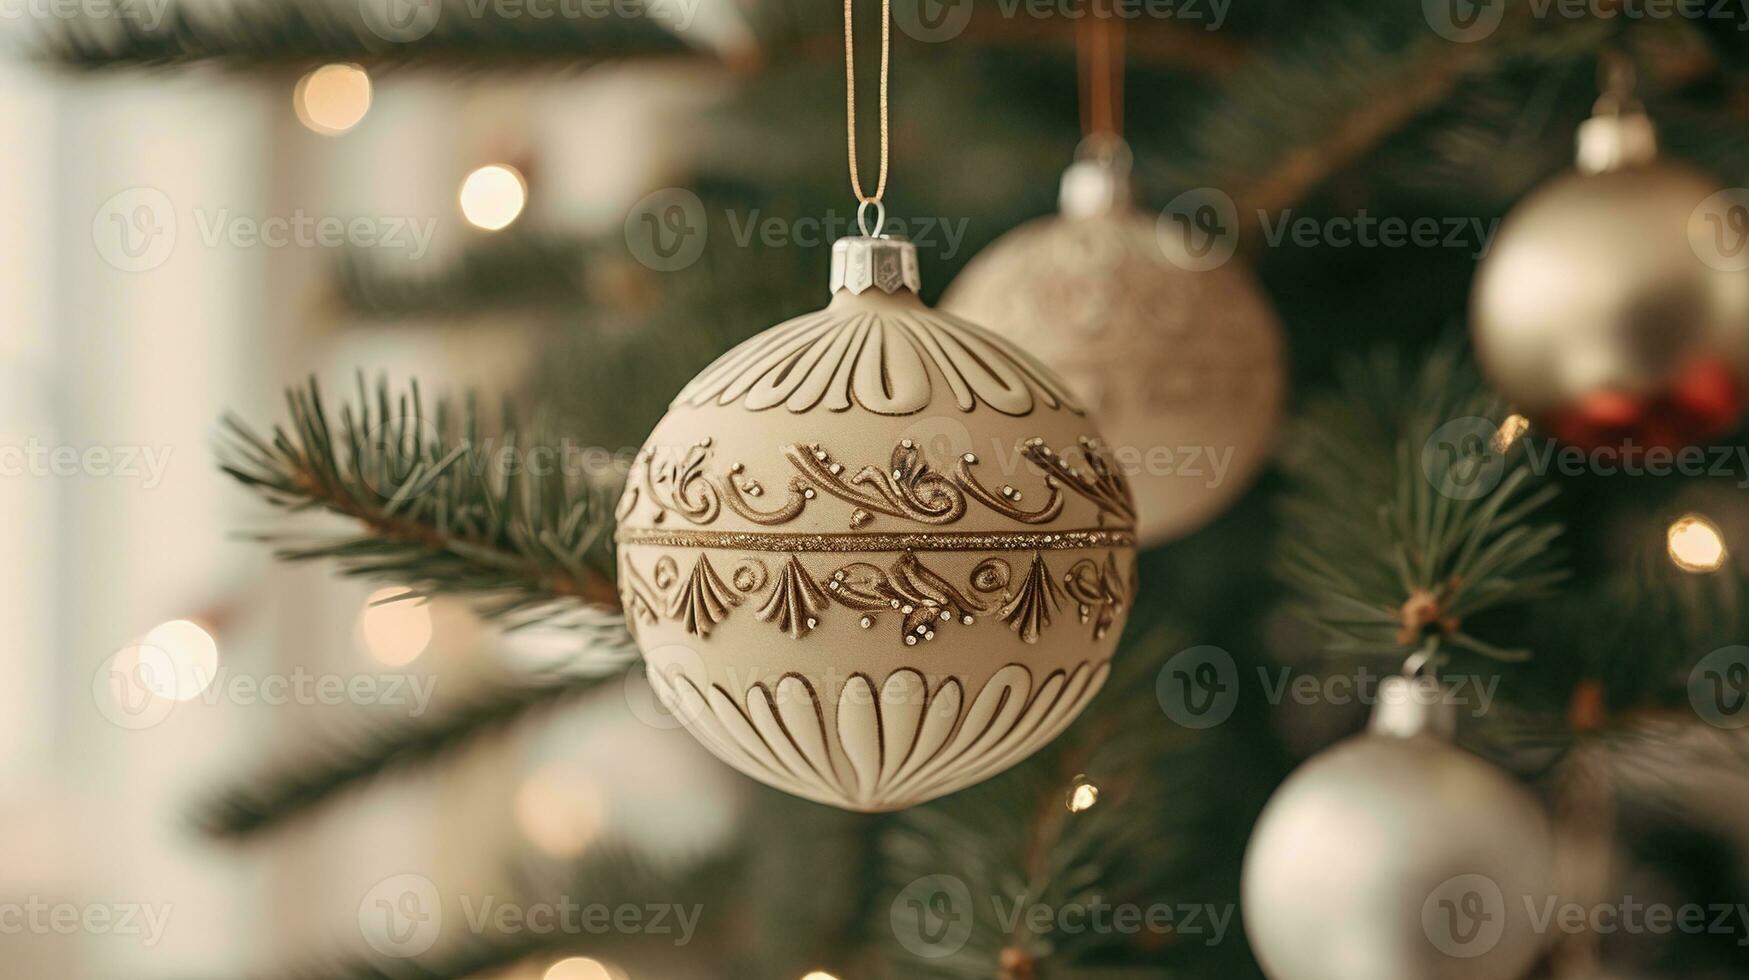 generativo ai, navidad y nuevo año pelotas en el abeto árbol sucursales, Días festivos concepto, festivo invierno temporada antecedentes foto